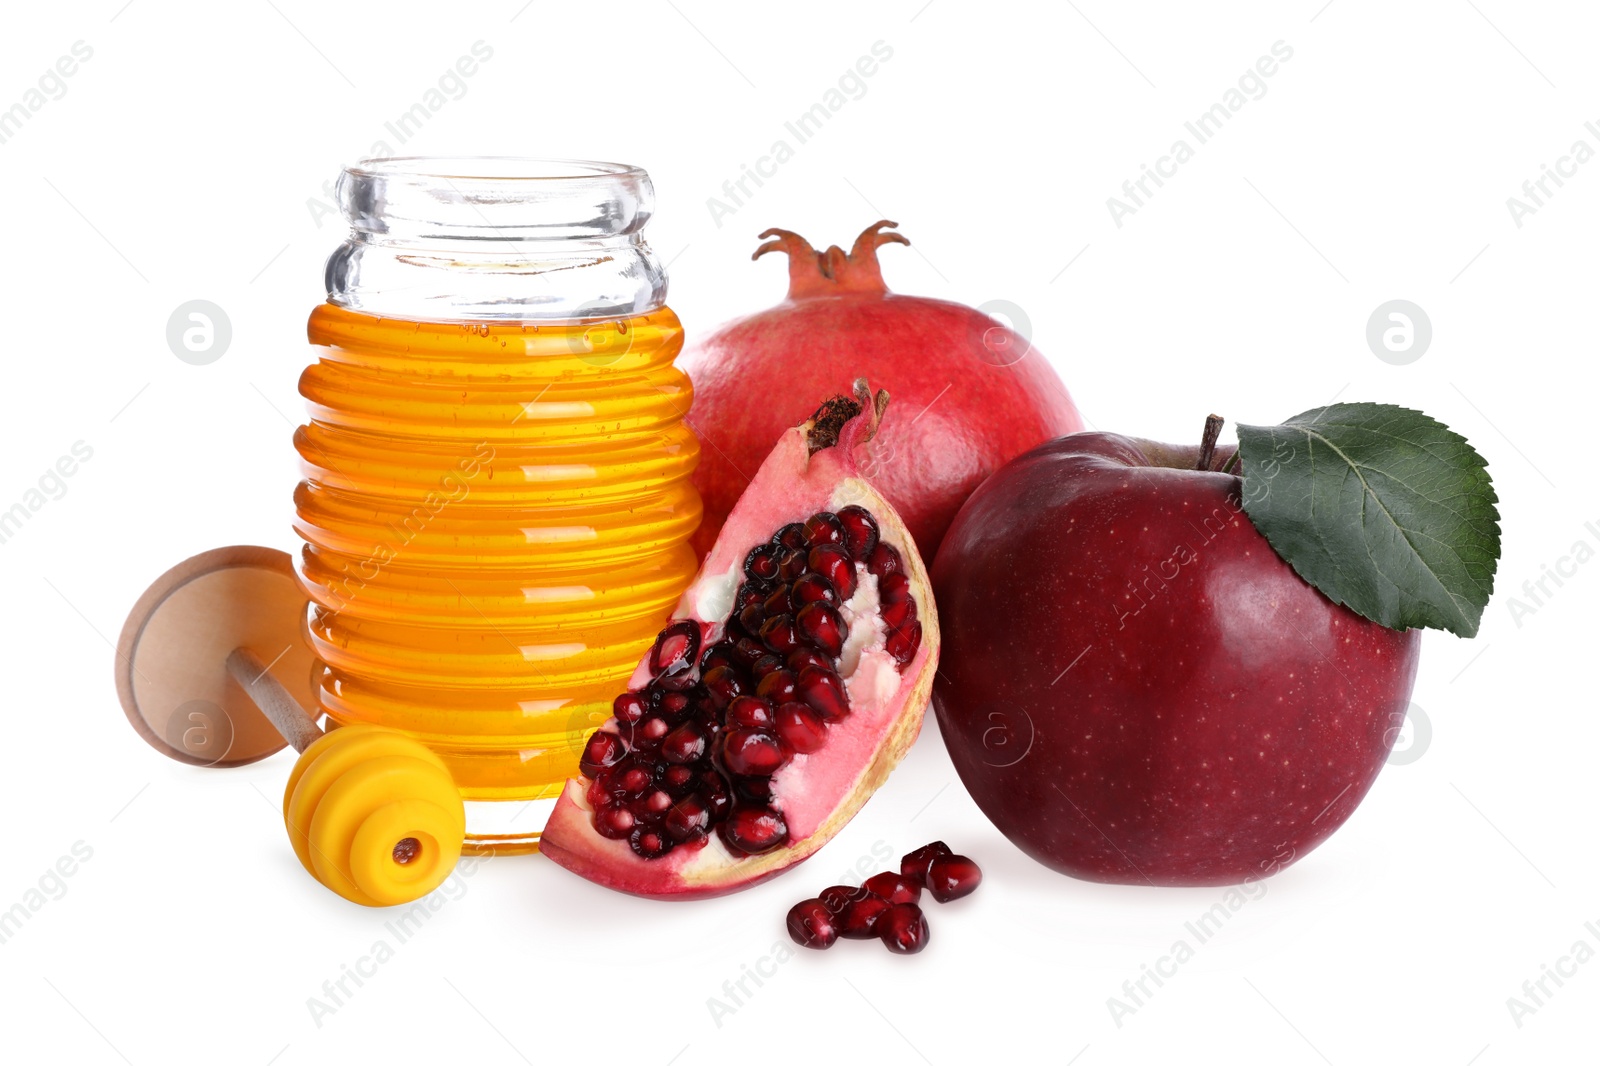 Photo of Honey, apple and pomegranates on white background. Jewish New Year (Rosh Hashanah) holiday